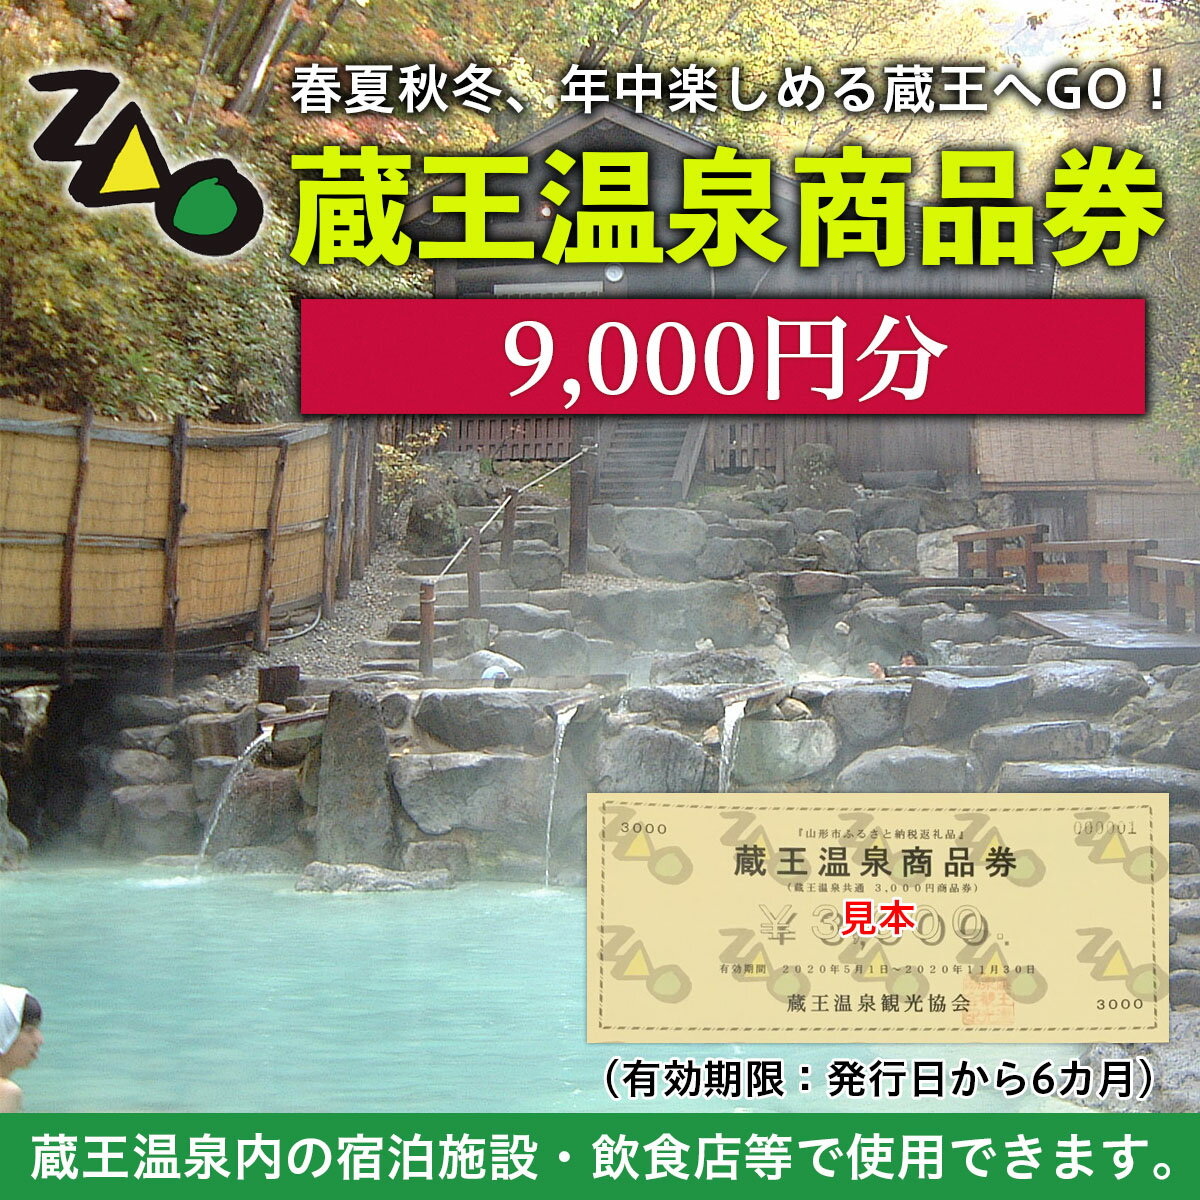 【ふるさと納税】FY21-517 蔵王温泉商品券 9,000円分